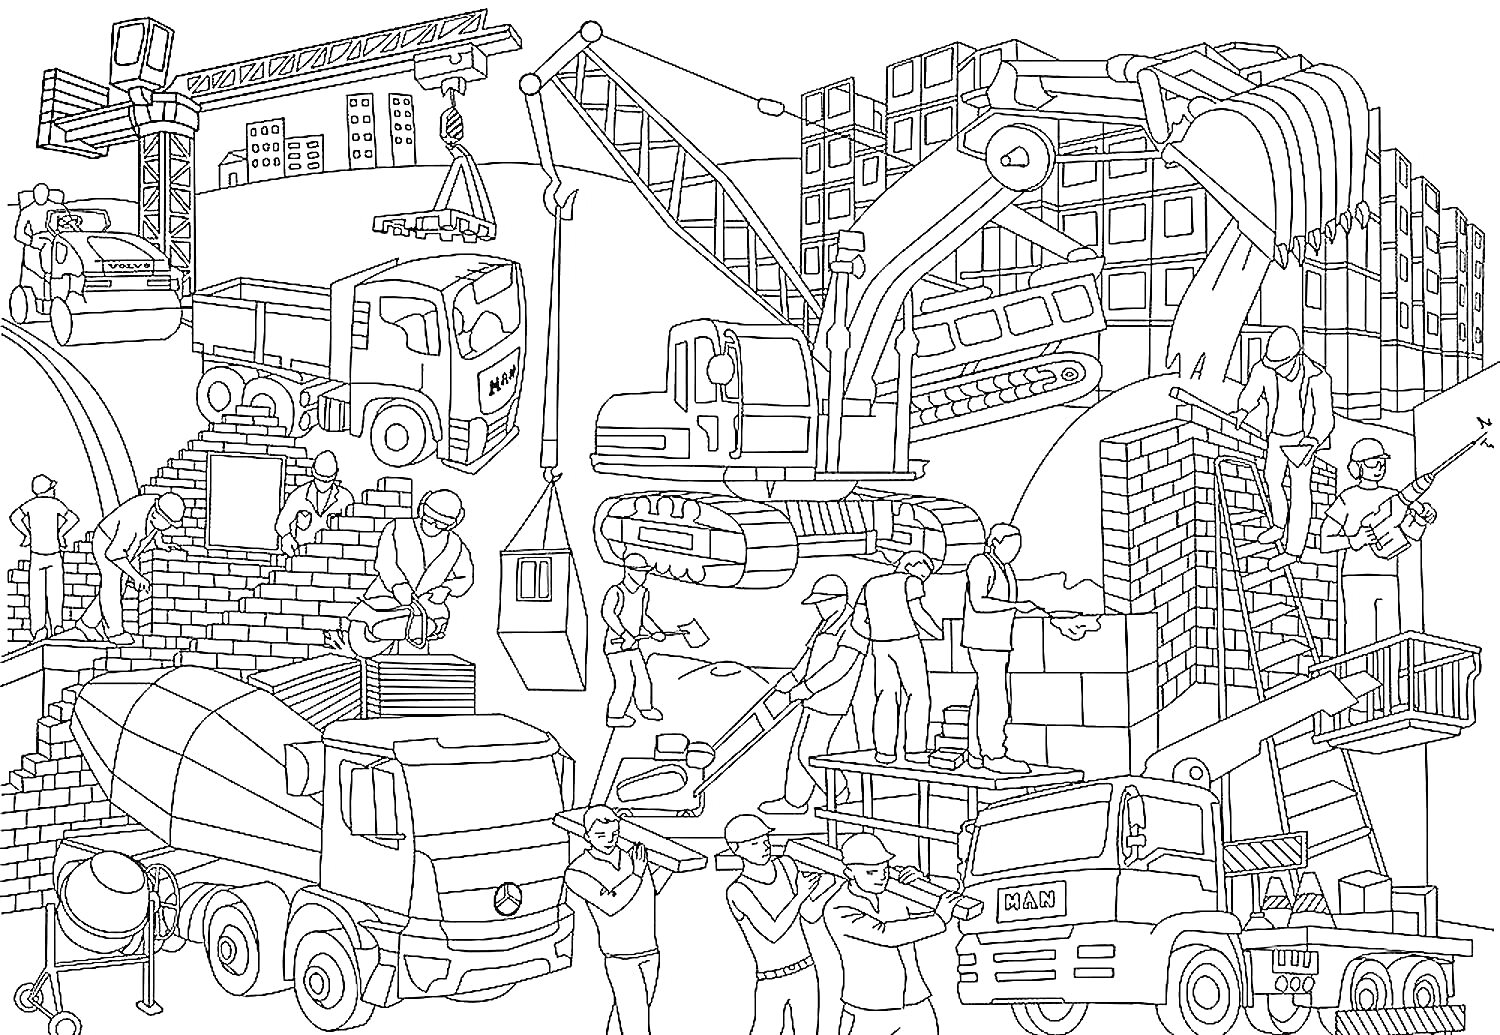 Раскраска Стандартная стройка с грузовиками, экскаваторами, рабочими и краном